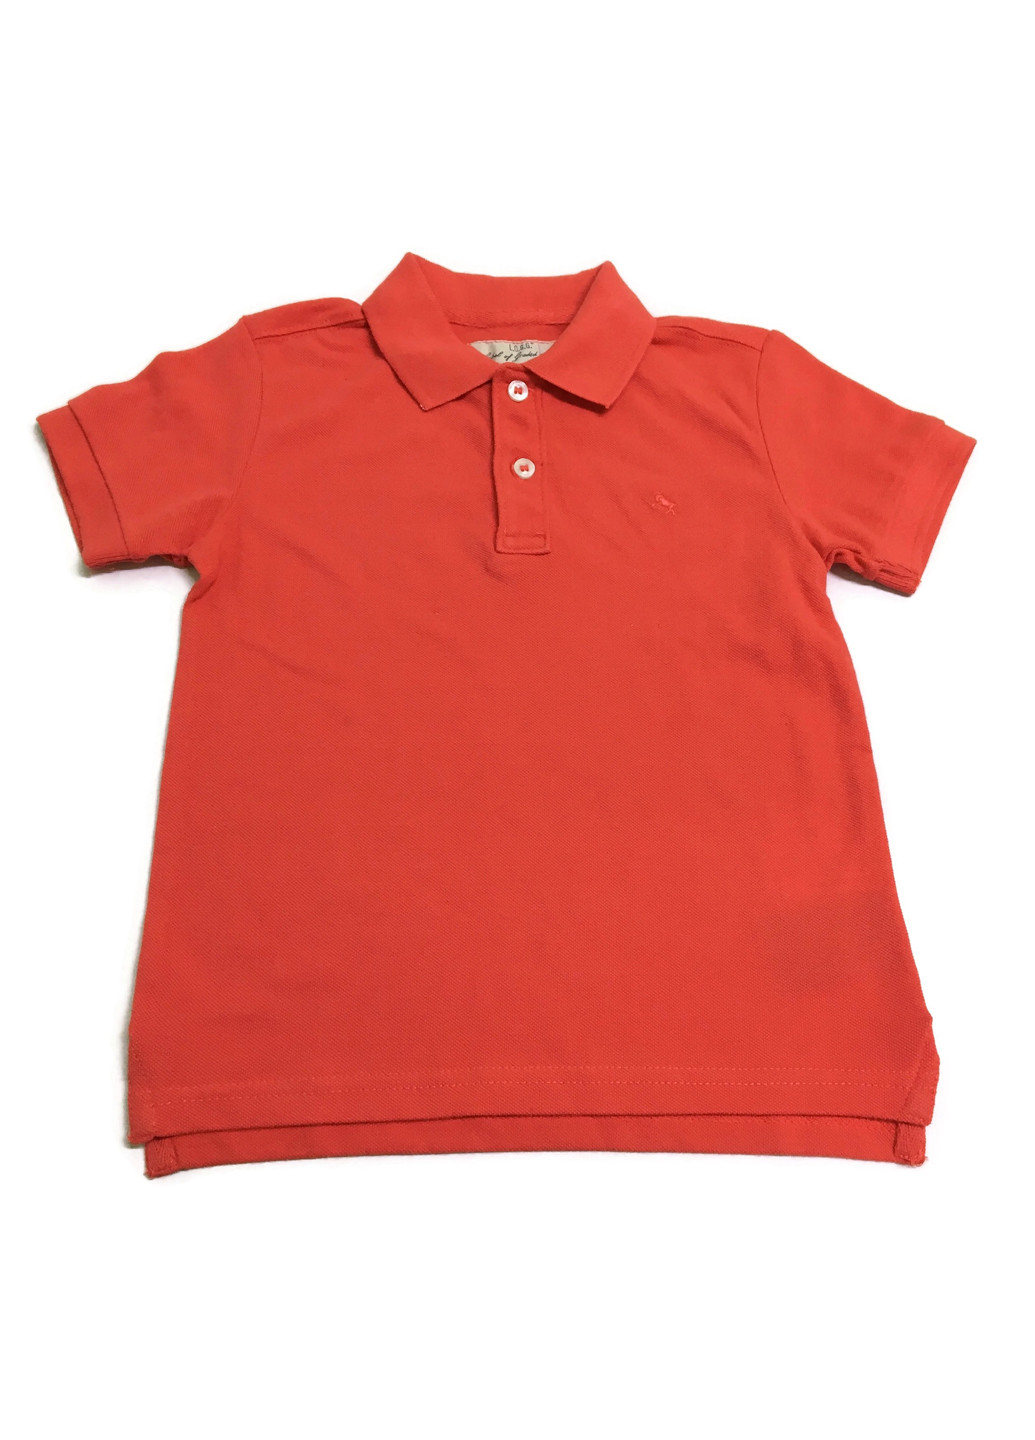 Красная детская футболка-поло для мальчика H&M